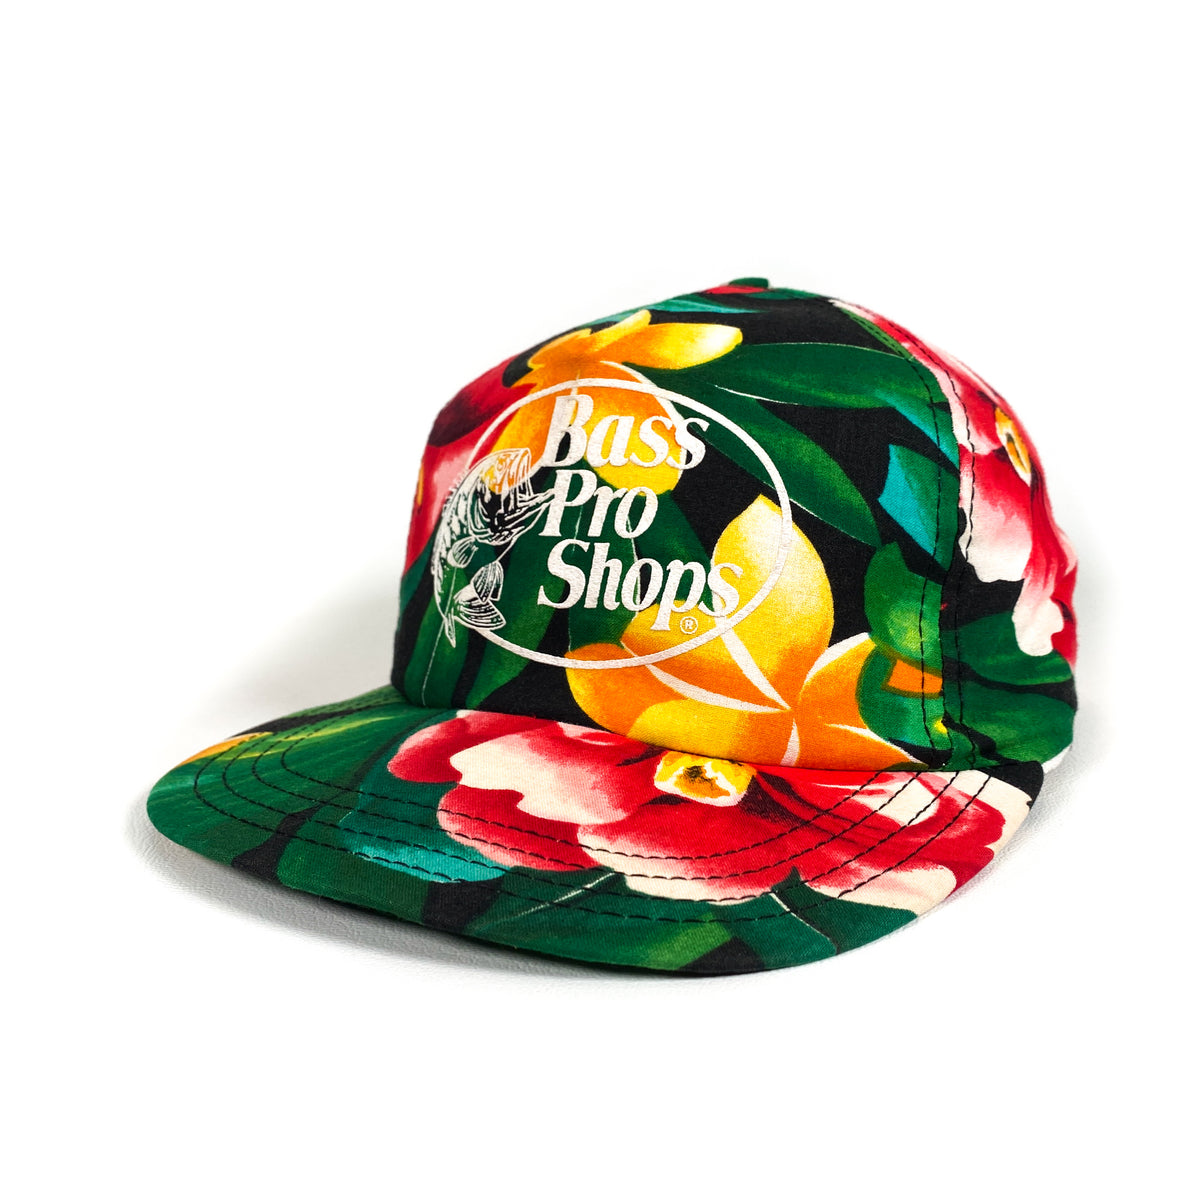 Bass Pro Shops Floral Sublimation Cap for Ladies